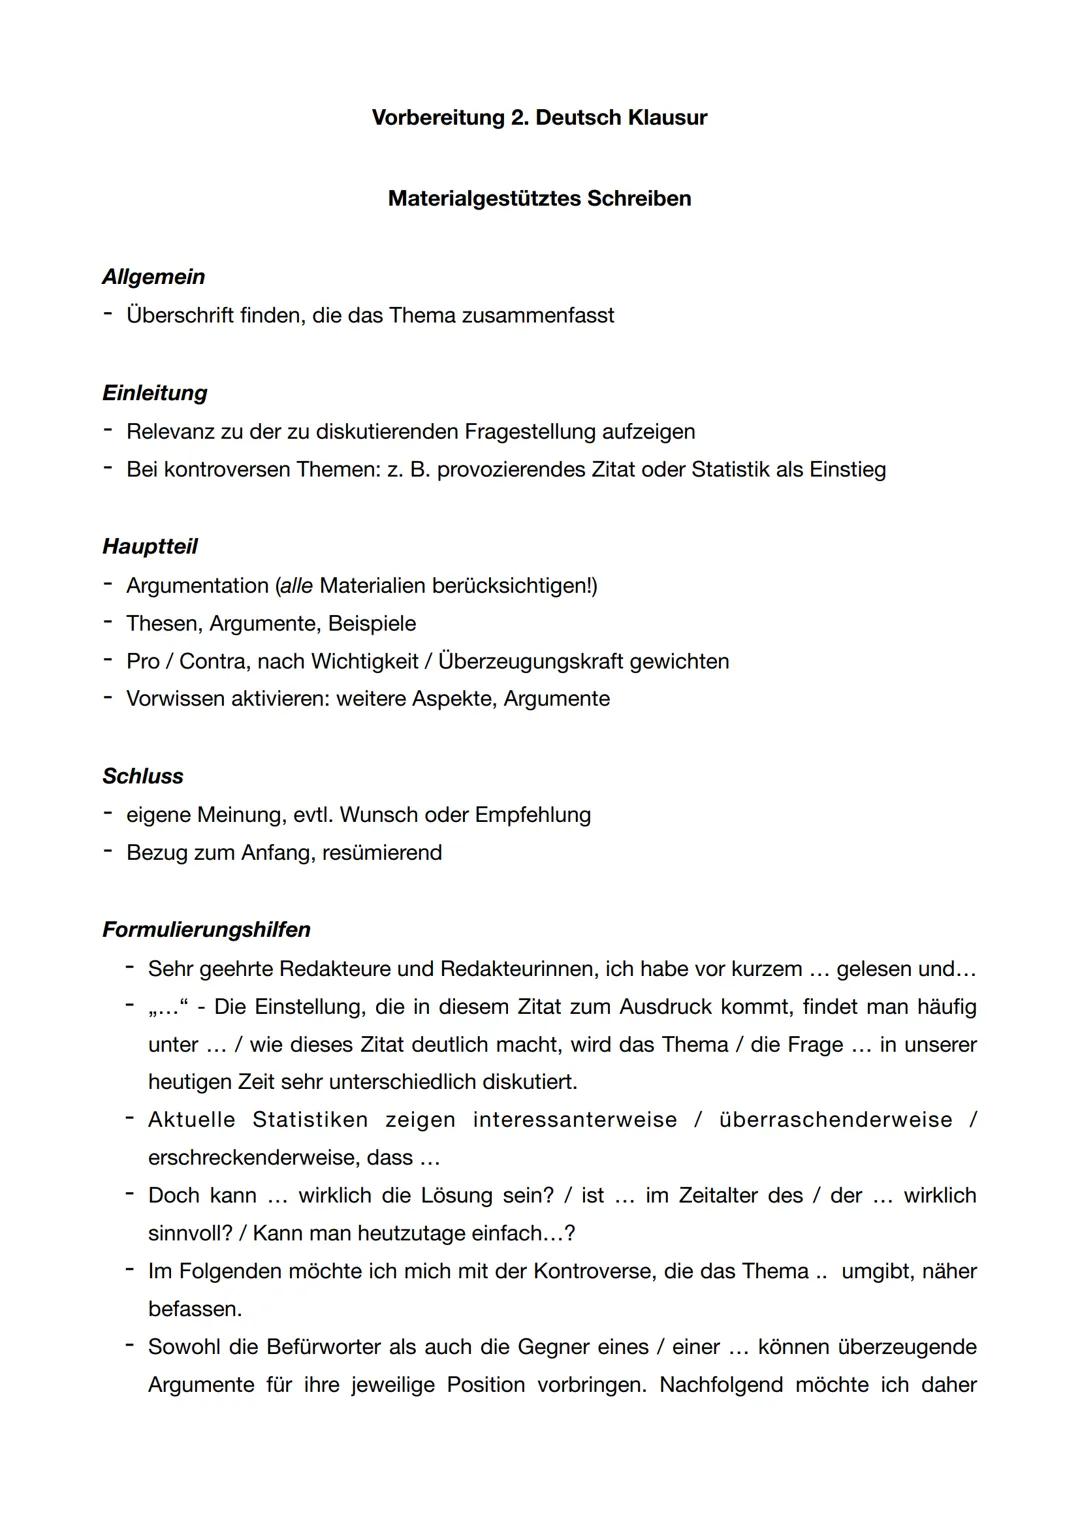 Vorbereitung 2. Deutsch Klausur
Materialgestütztes Schreiben
Allgemein
Überschrift finden, die das Thema zusammenfasst
Einleitung
Relevanz z